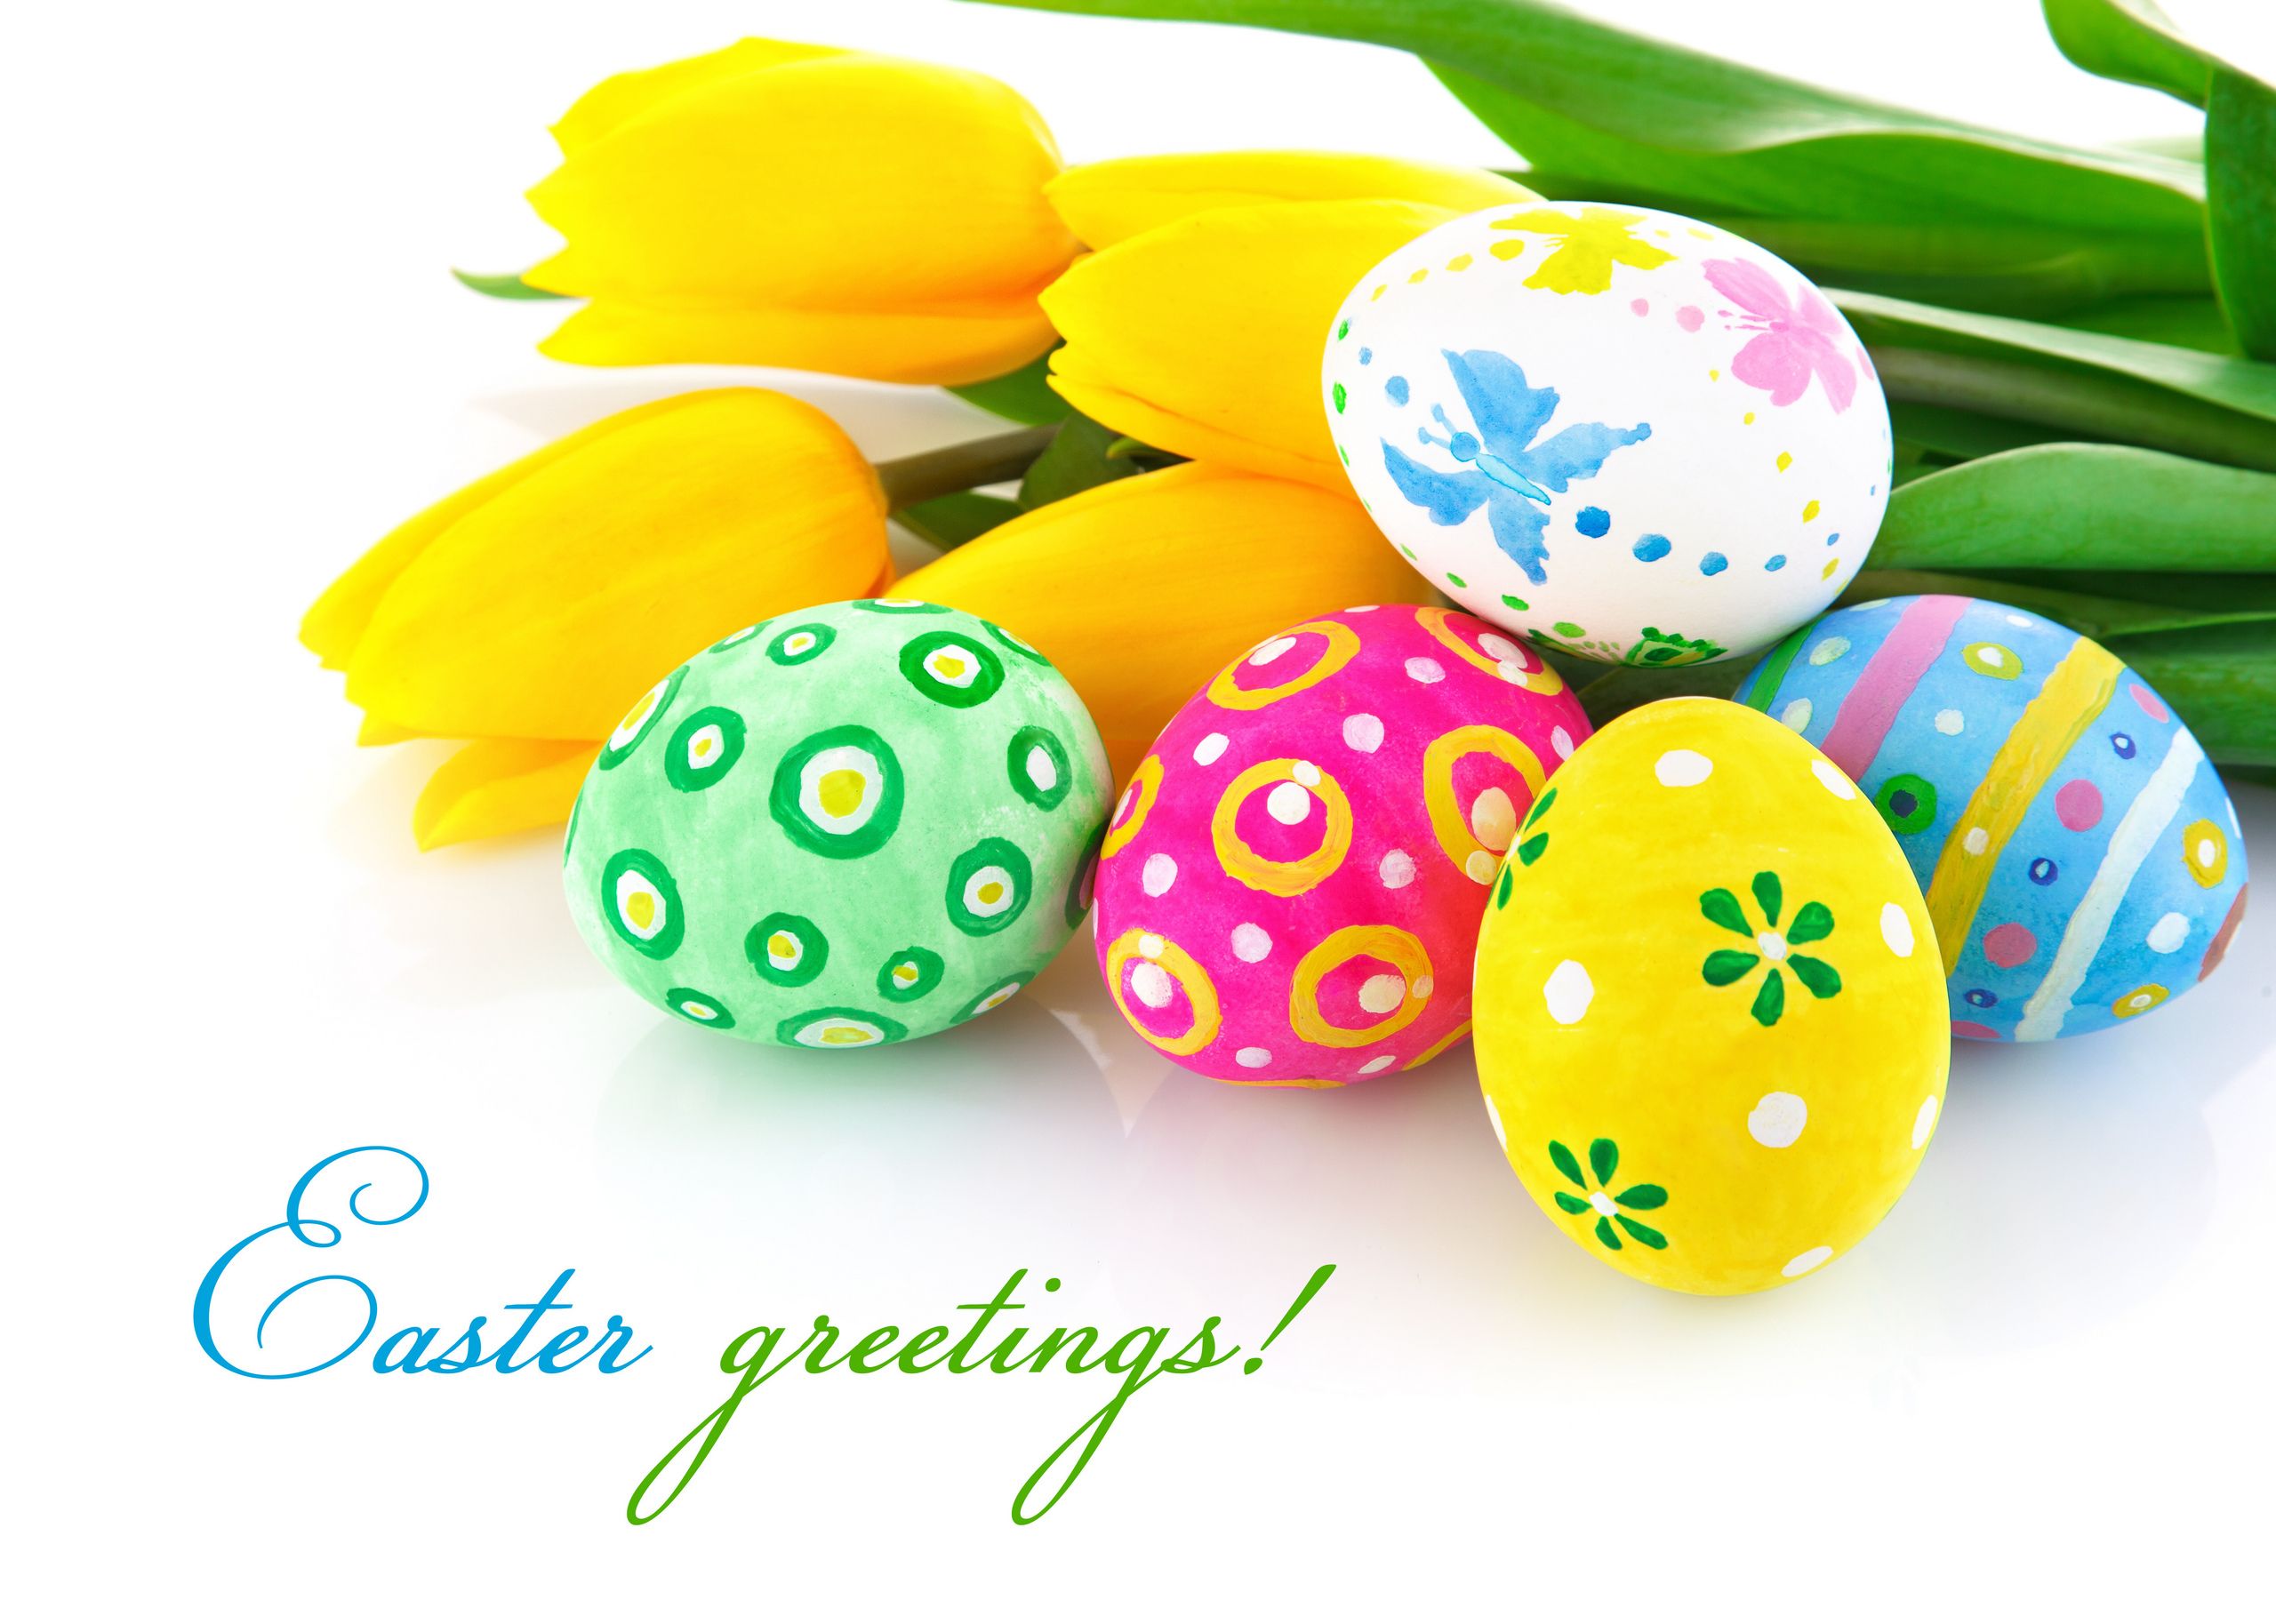 Happy Easter Image for Desktop